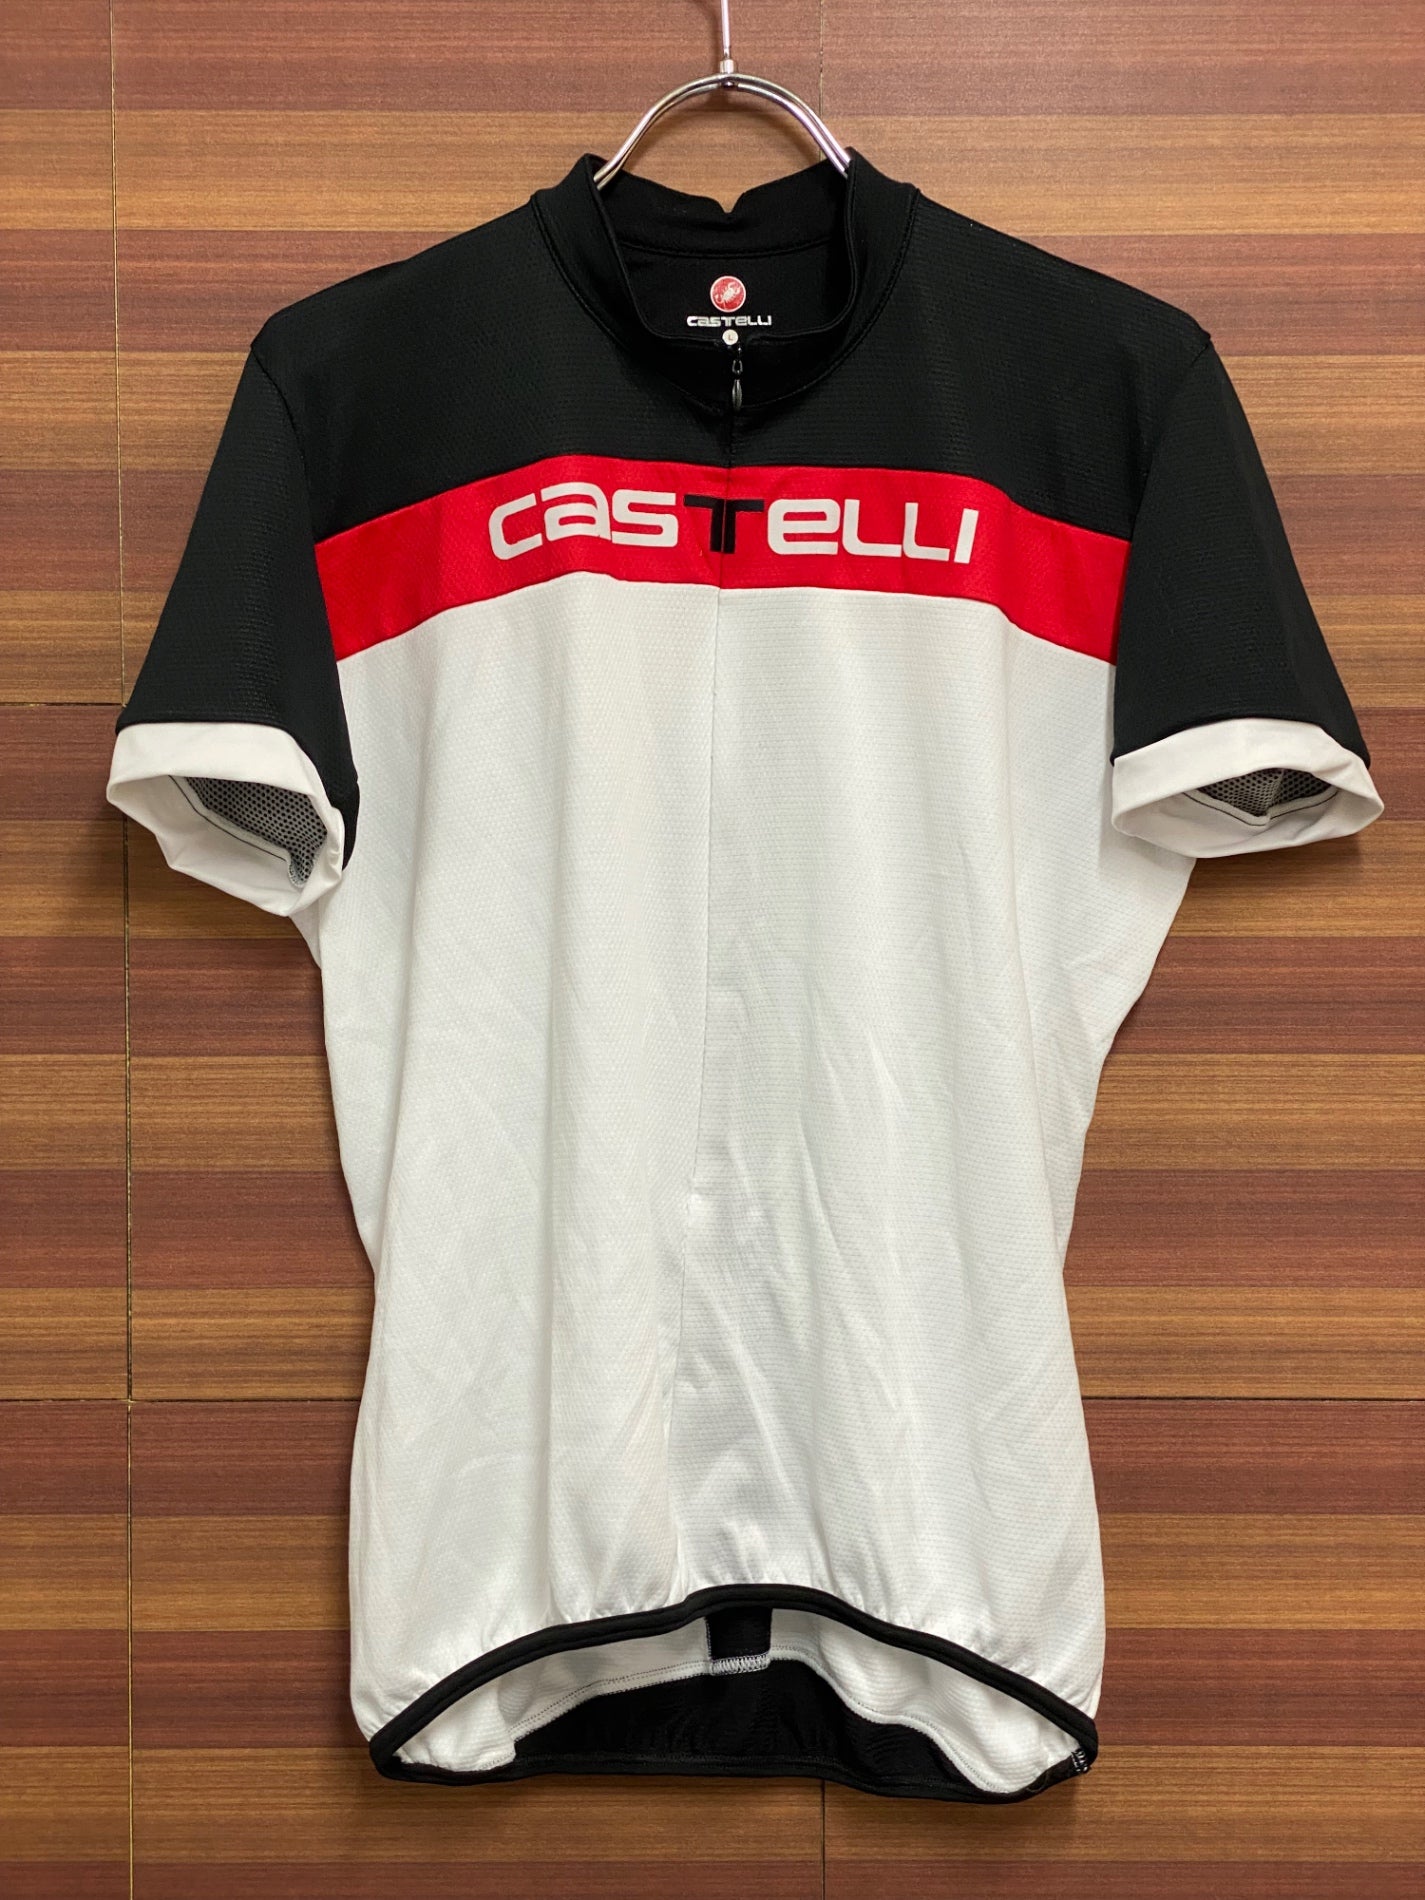 【お値打ち】カステリ Castelli サイクリングジャージ 半袖 Foga サイズM 新品 赤 レッド Mサイズ